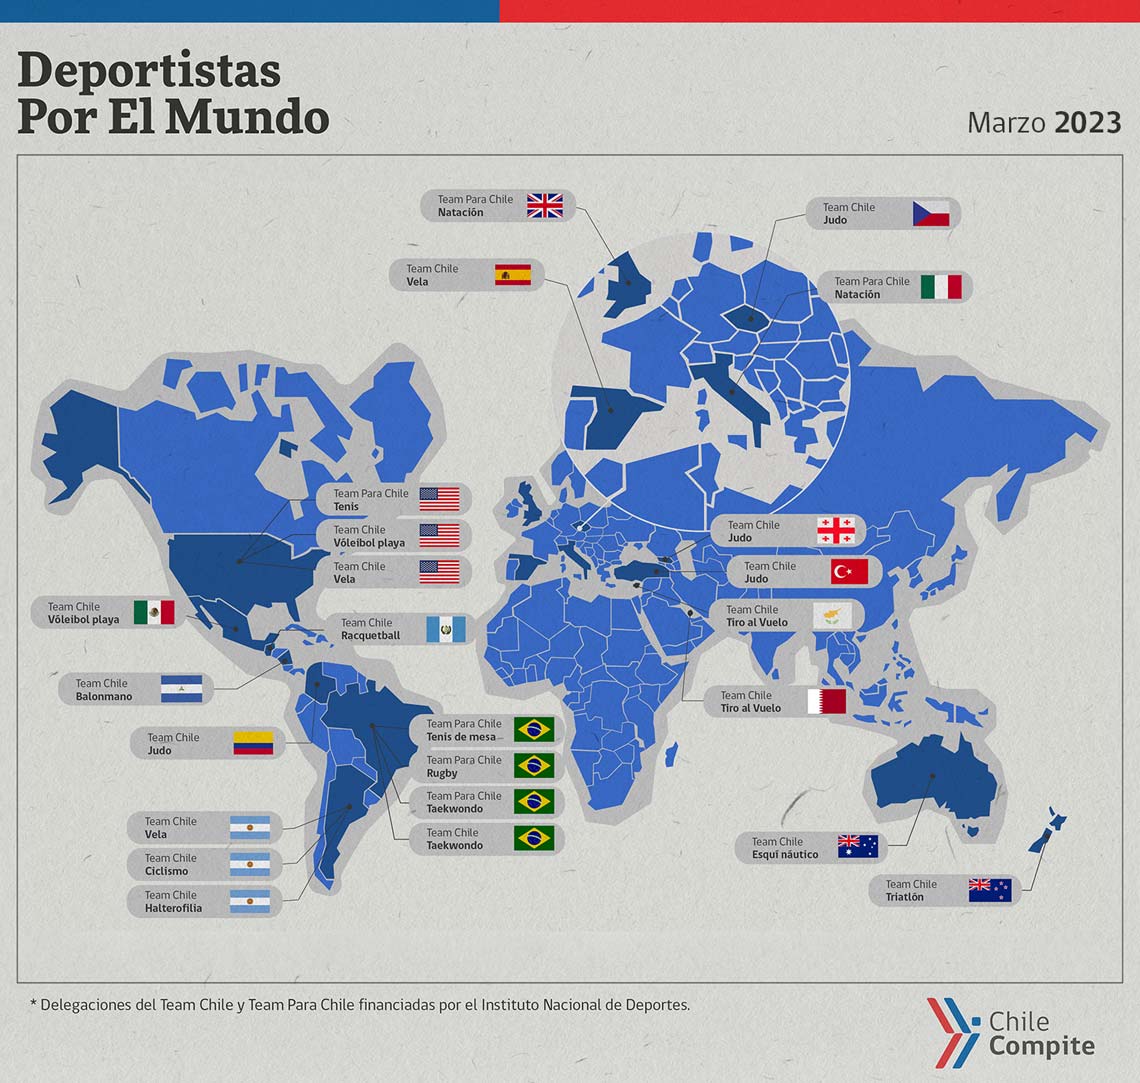 Mapa-deportistas-por-el-mundo-2023-marzo